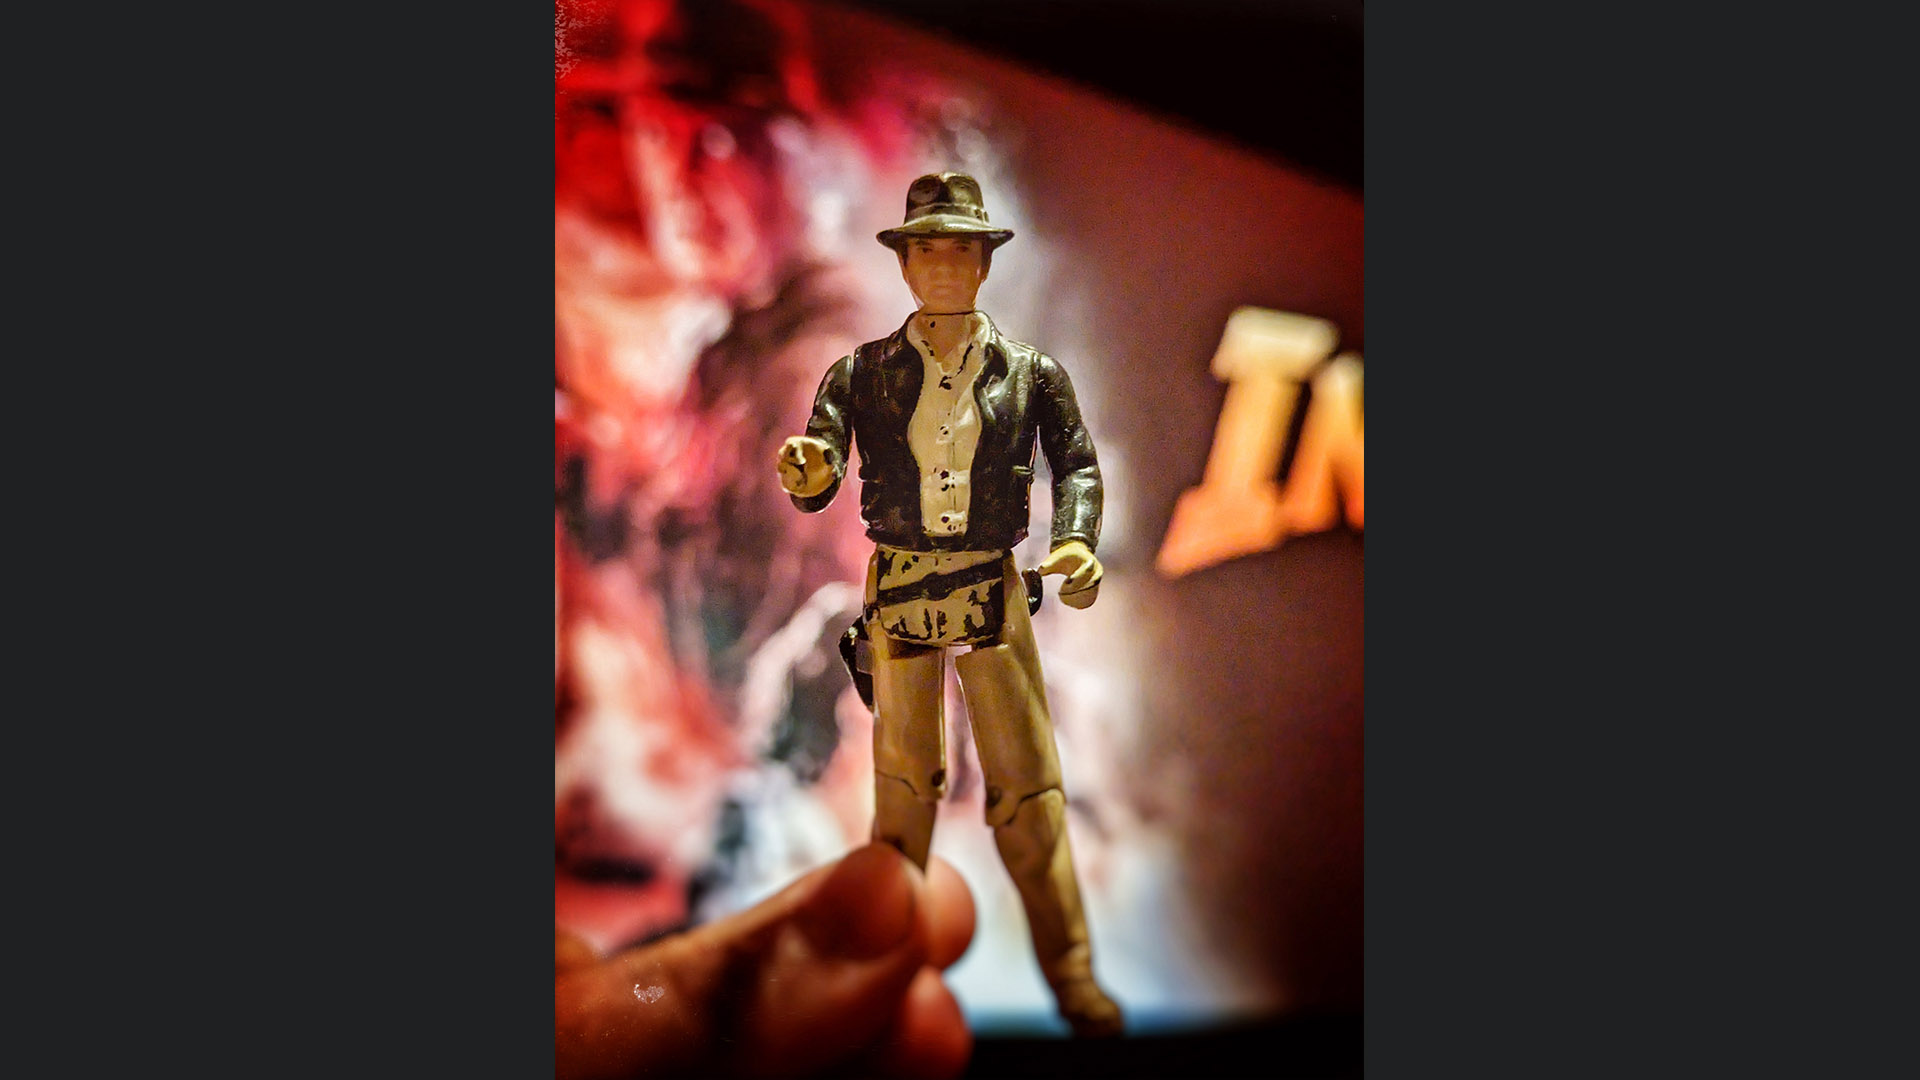 Brandon's original Indiana Jones action figure.